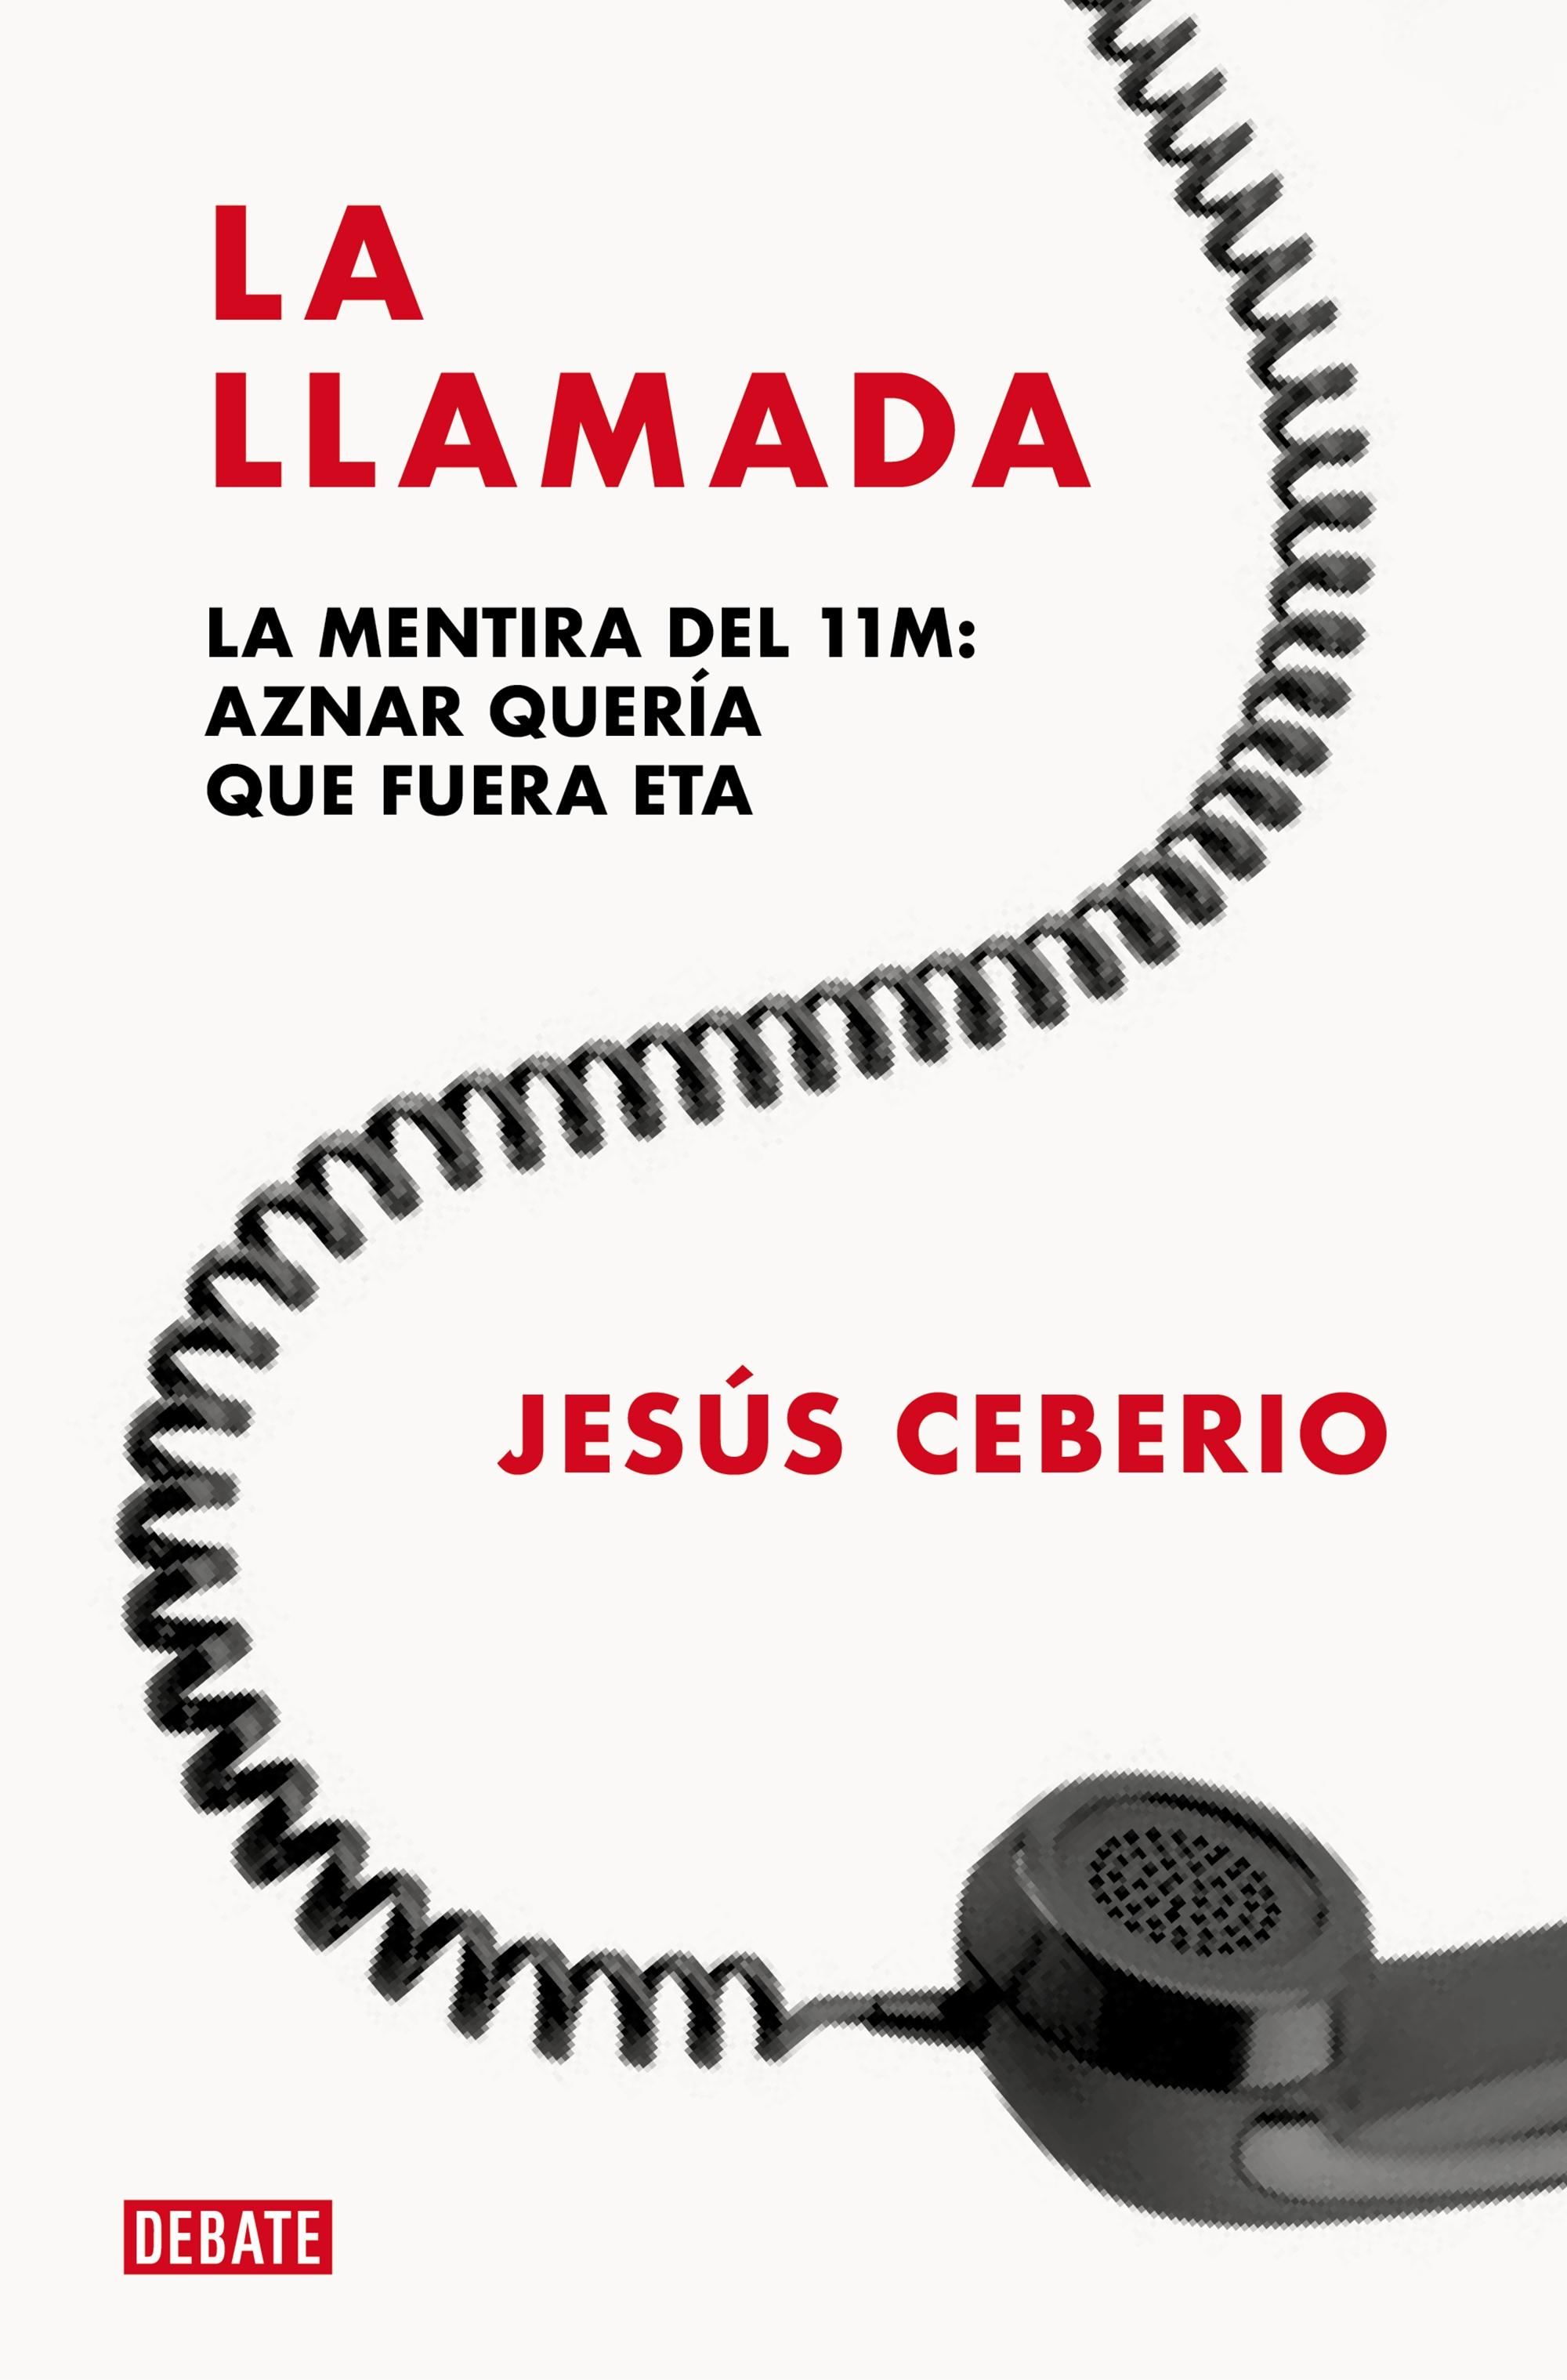 La Llamada "La Mentira del 11m: Aznar Quería que Fuera Eta"